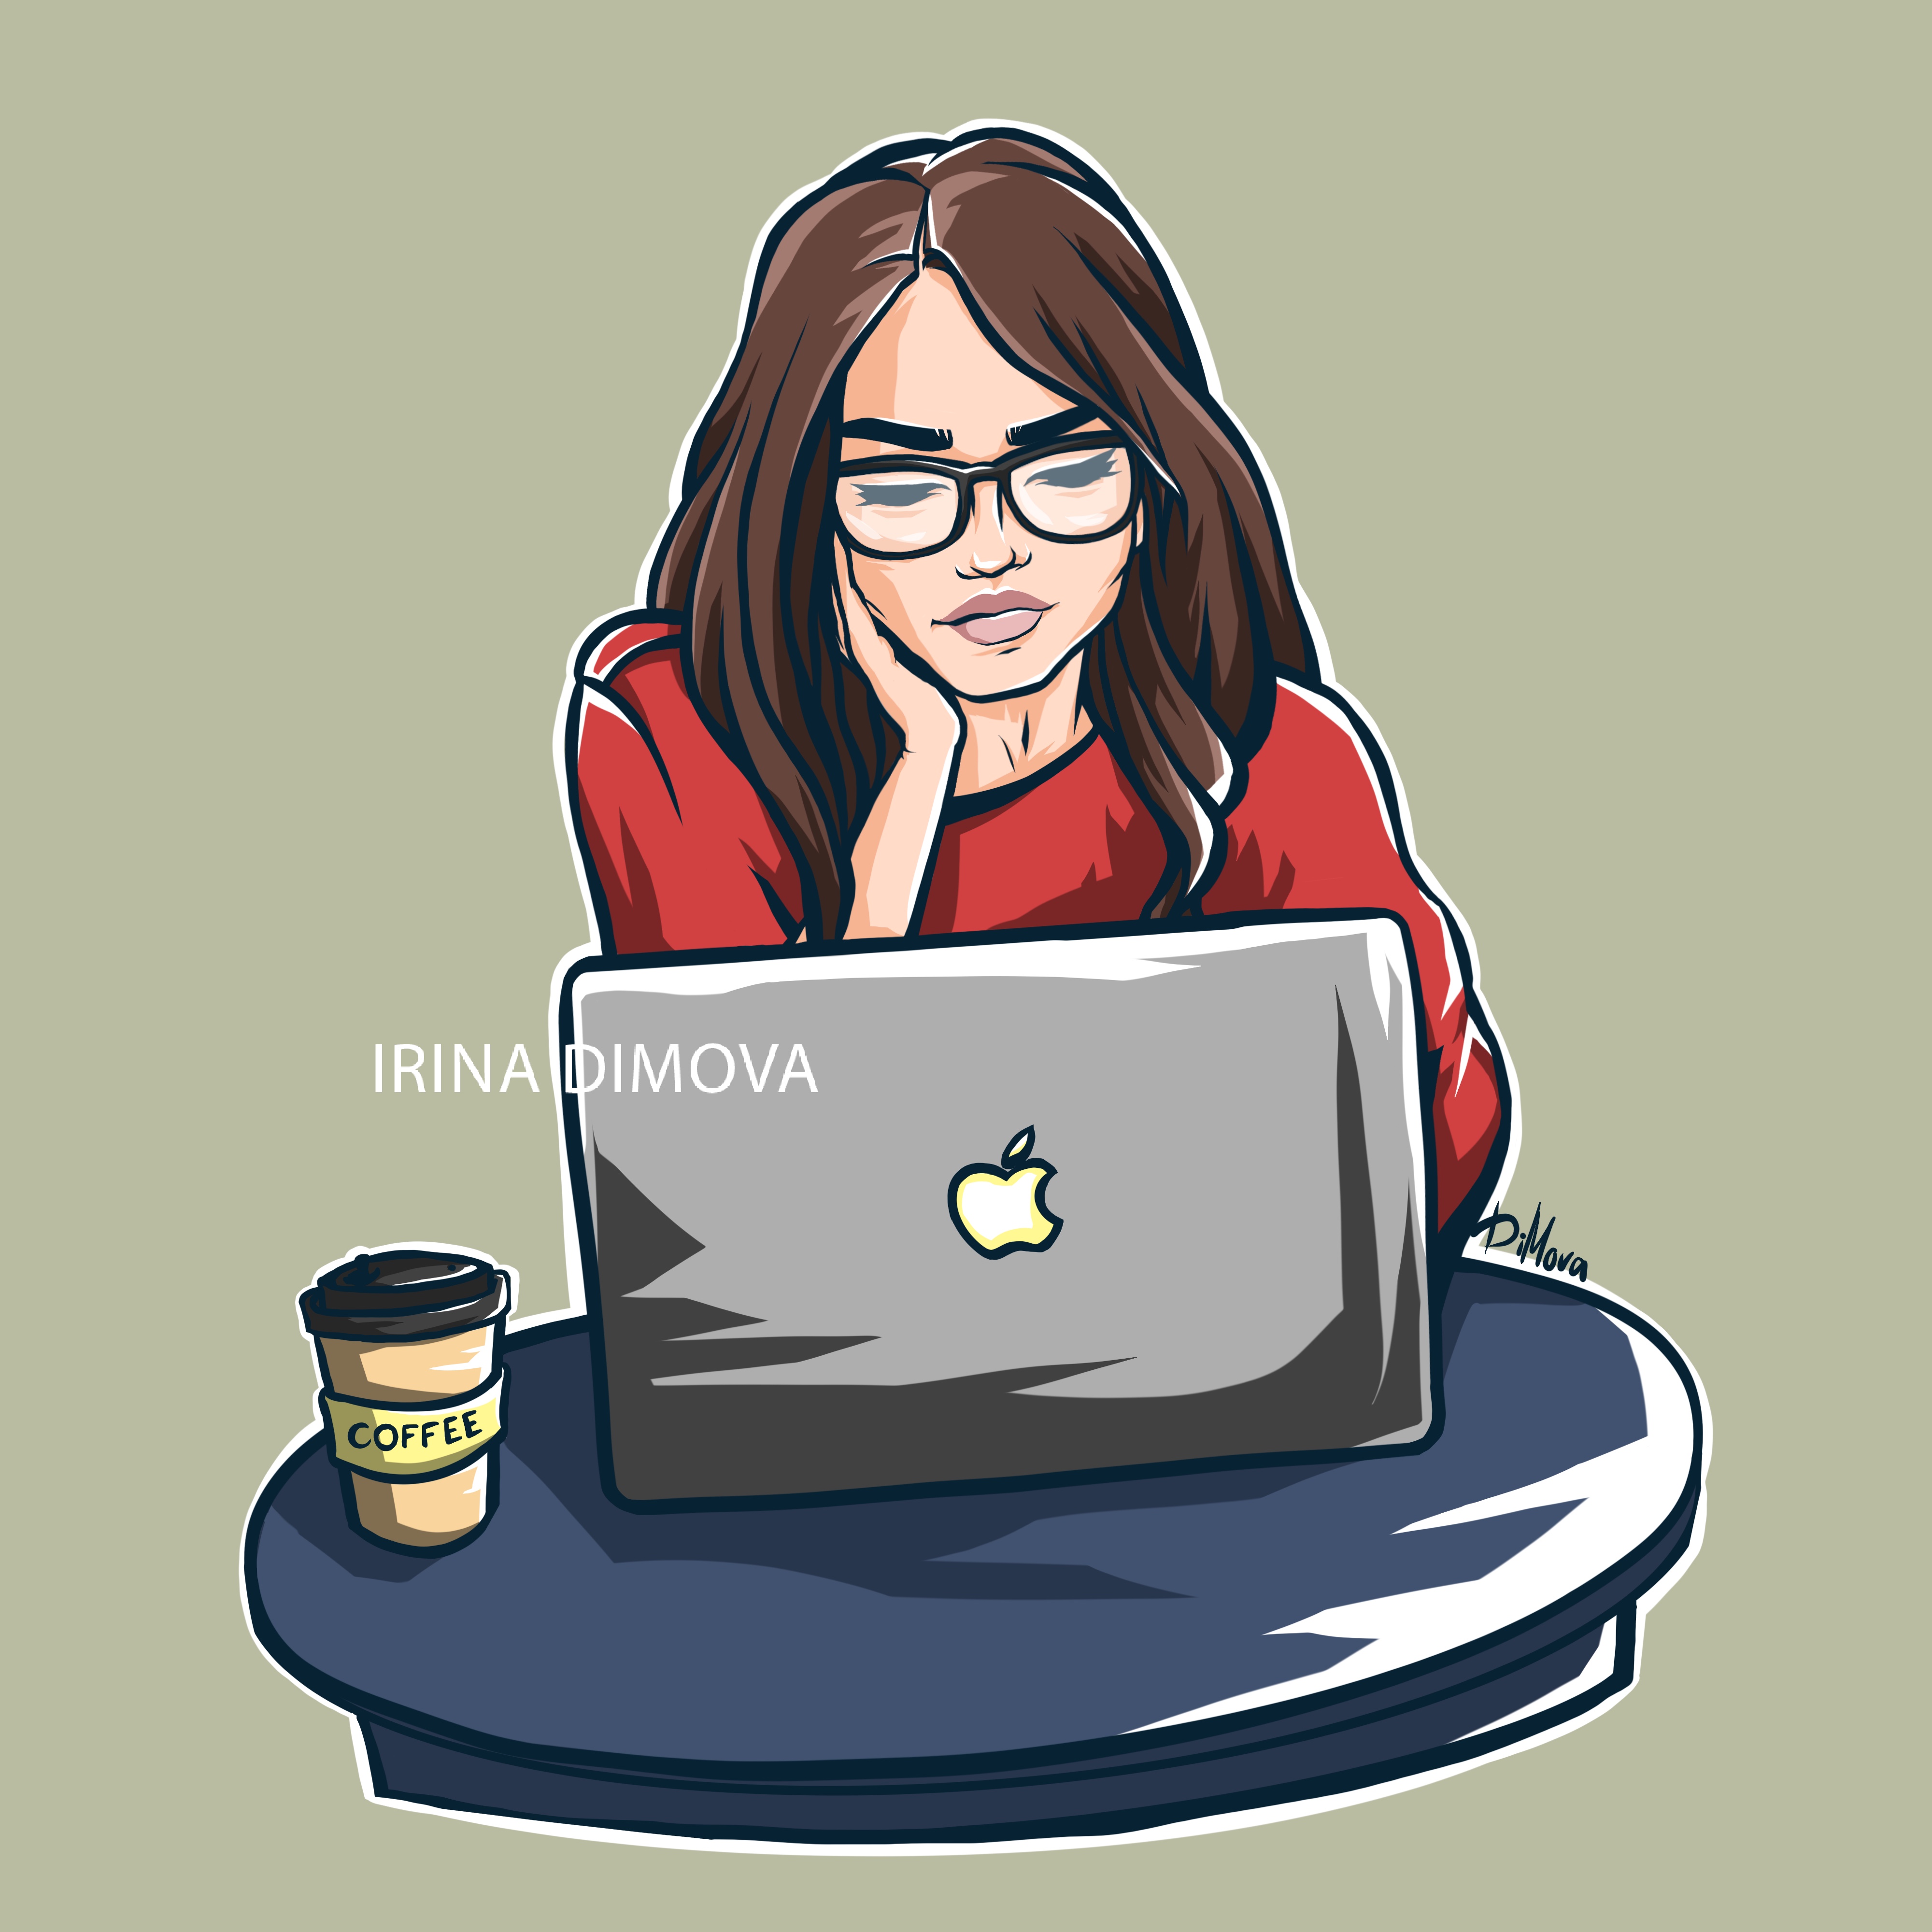 Аватарка в социальных сетях. Девушка за ноутбуком. Девушка с ноутбуком нарисованная. Аватарка дизайнера. Аватарка для работы.